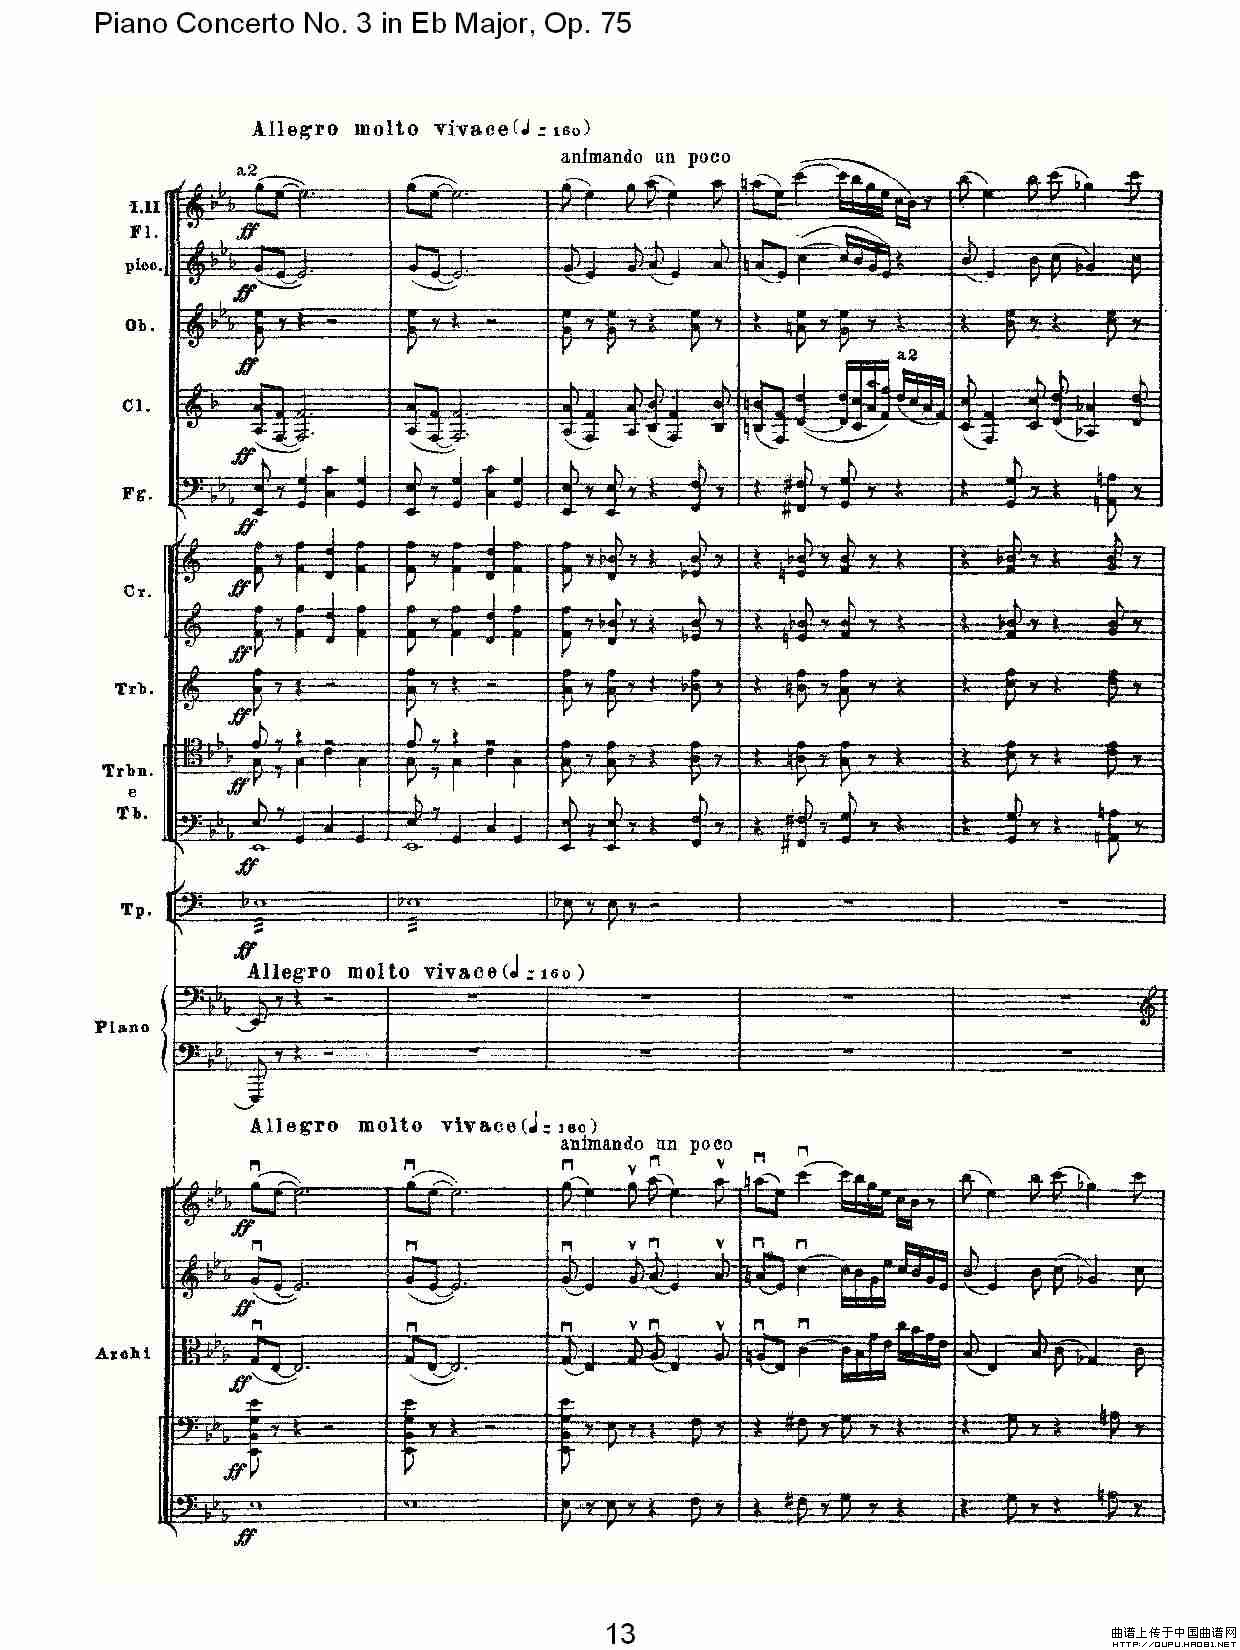 Piano Concerto No.3 in Eb Major, Op.75（Eb大调第三钢琴协奏）(1)_原文件名：Piano Concerto No.3 in Eb Major, Op.7513.jpg